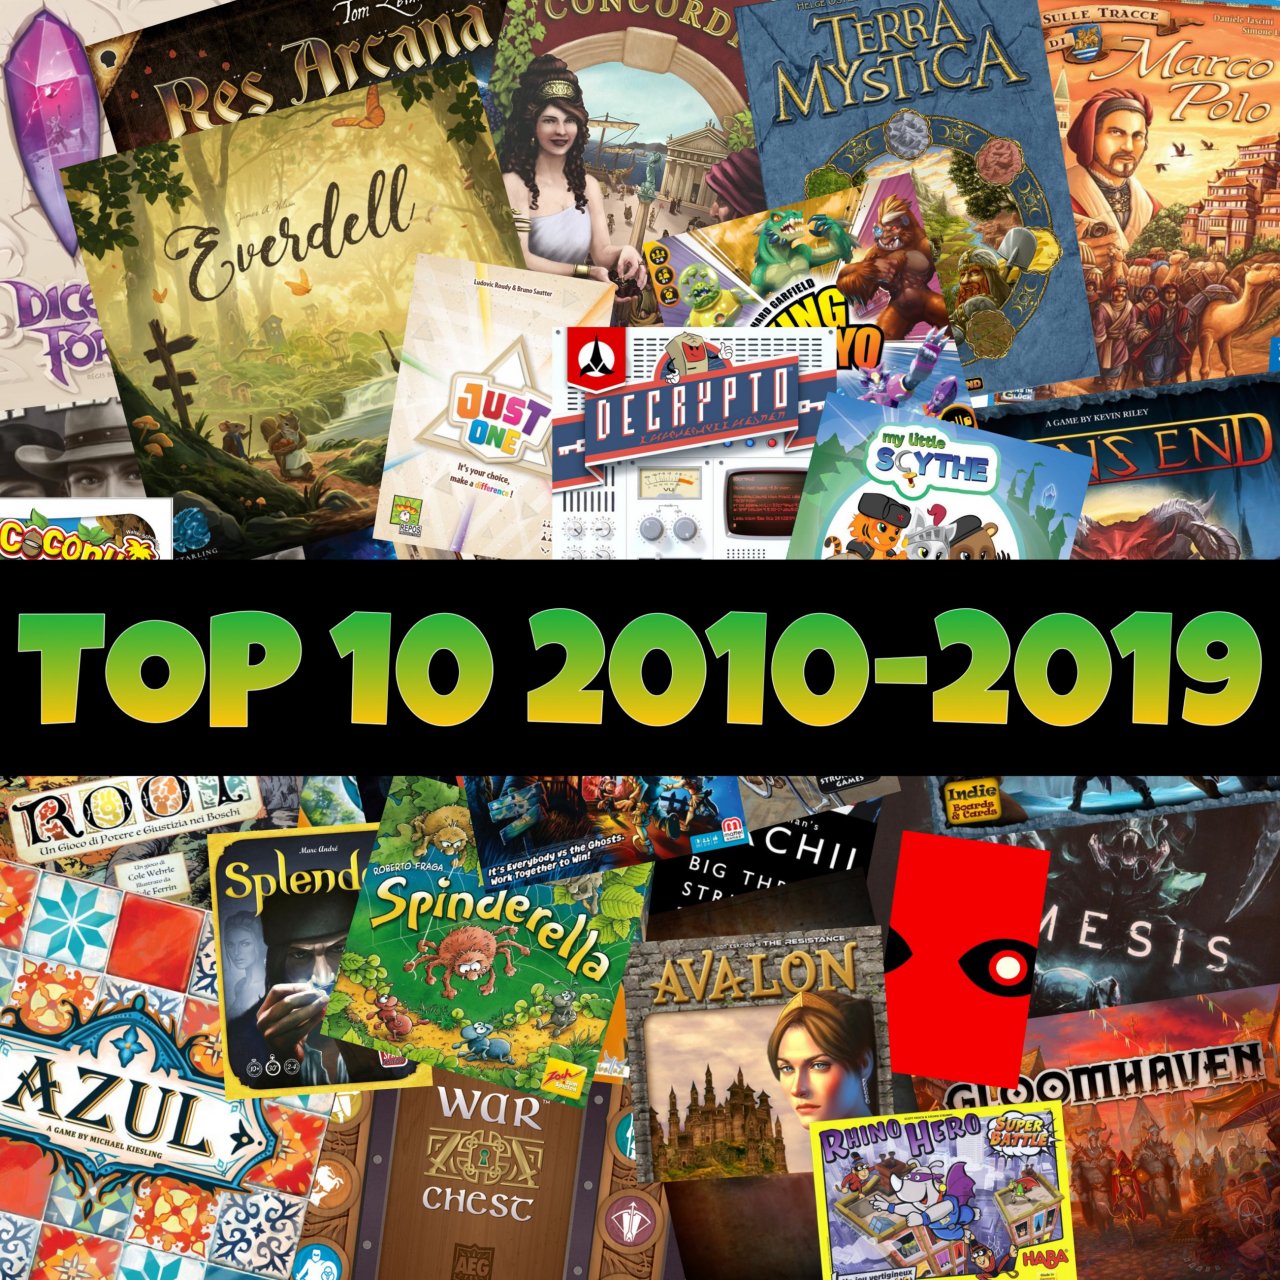 Top-10: i migliori giochi da tavolo - decade 2010-2019 | La Tana dei Goblin